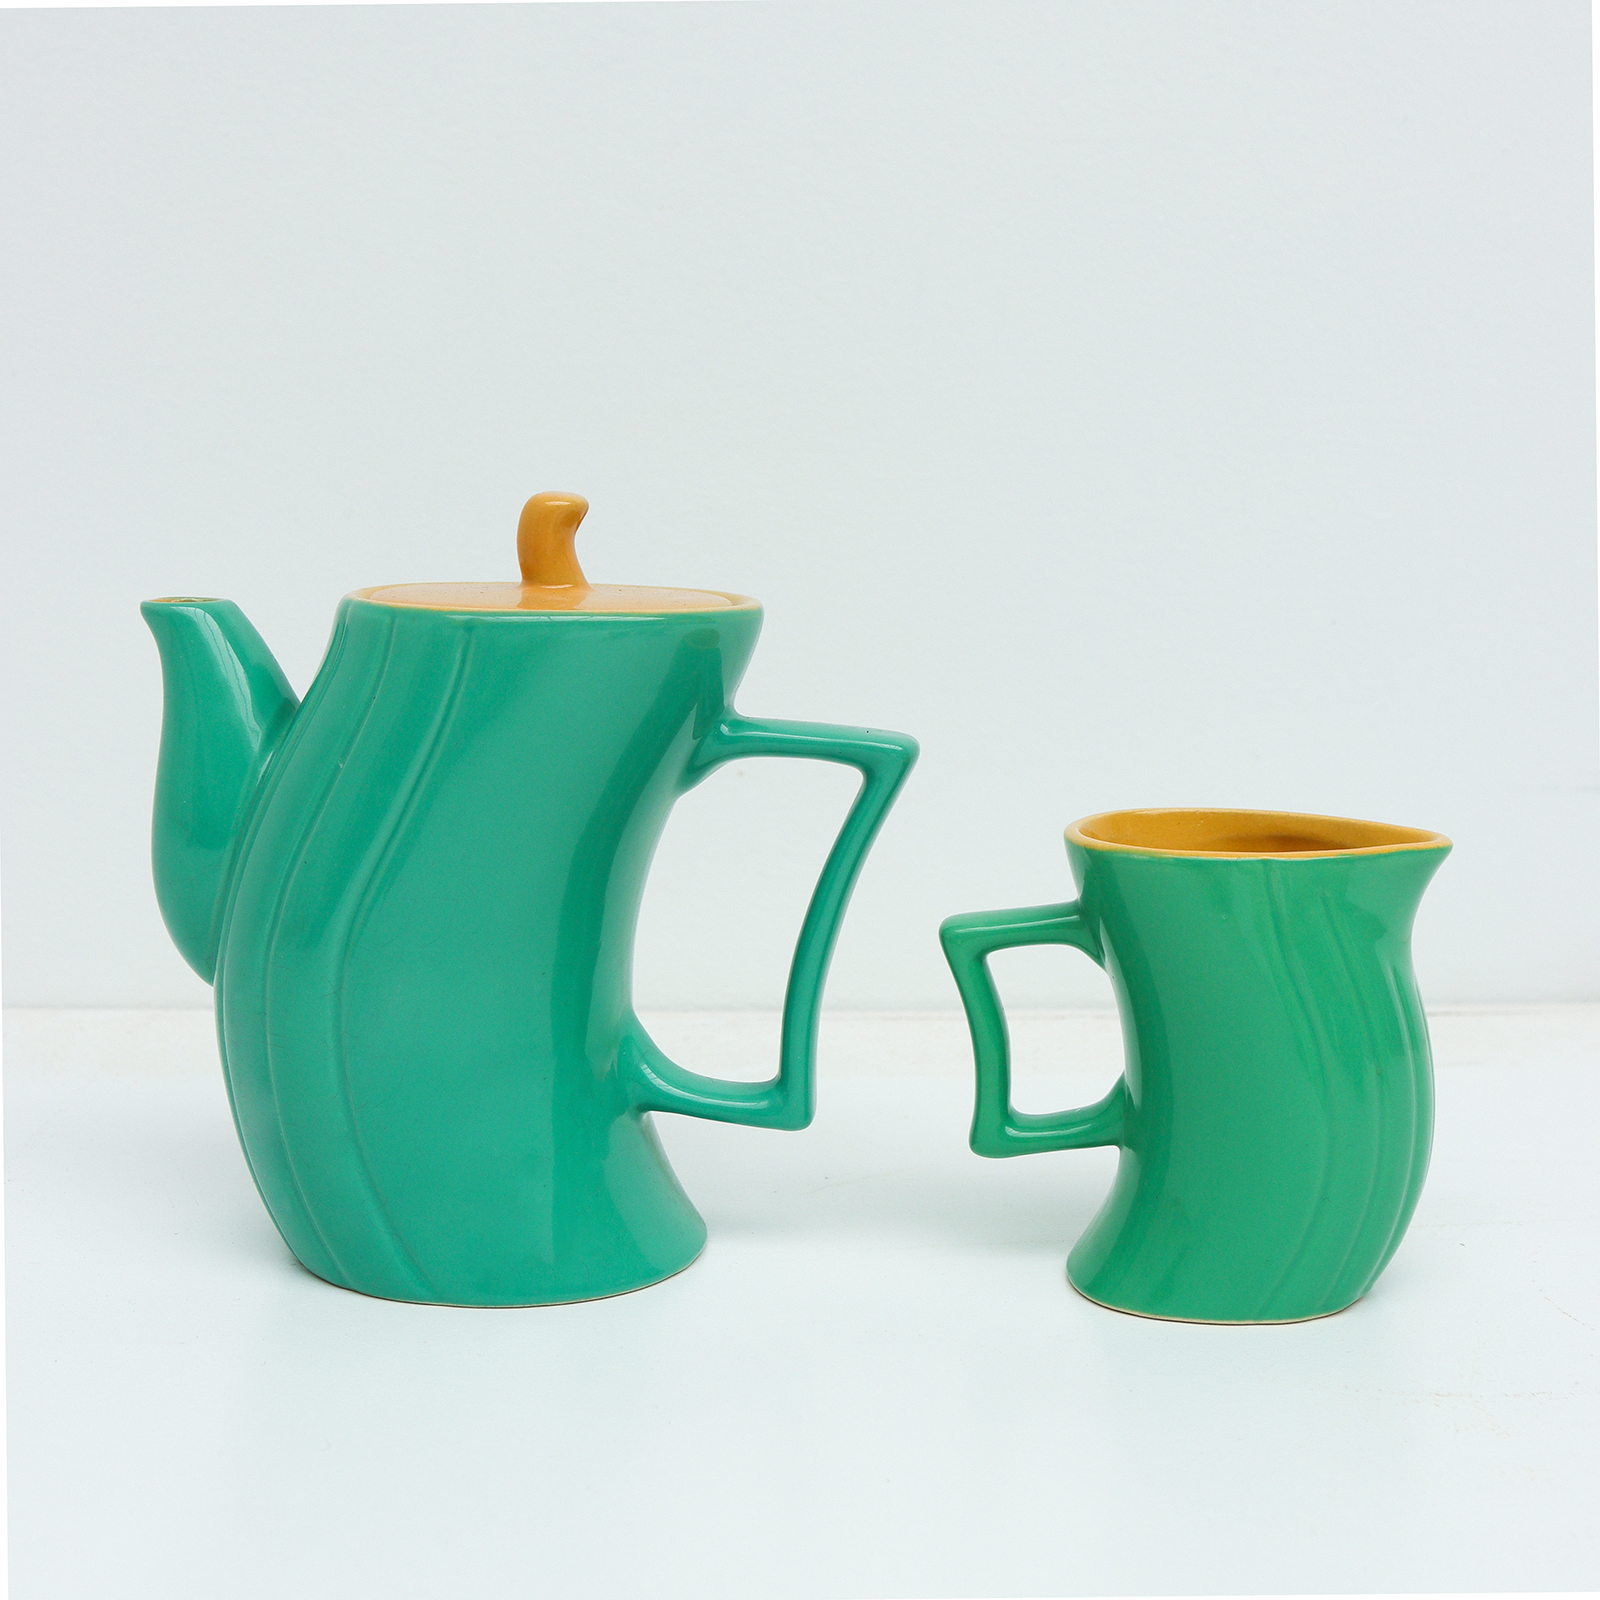 Ceramic Italian coffee Set by Massimo Iosa Ghini for Naj Oleari, 1985